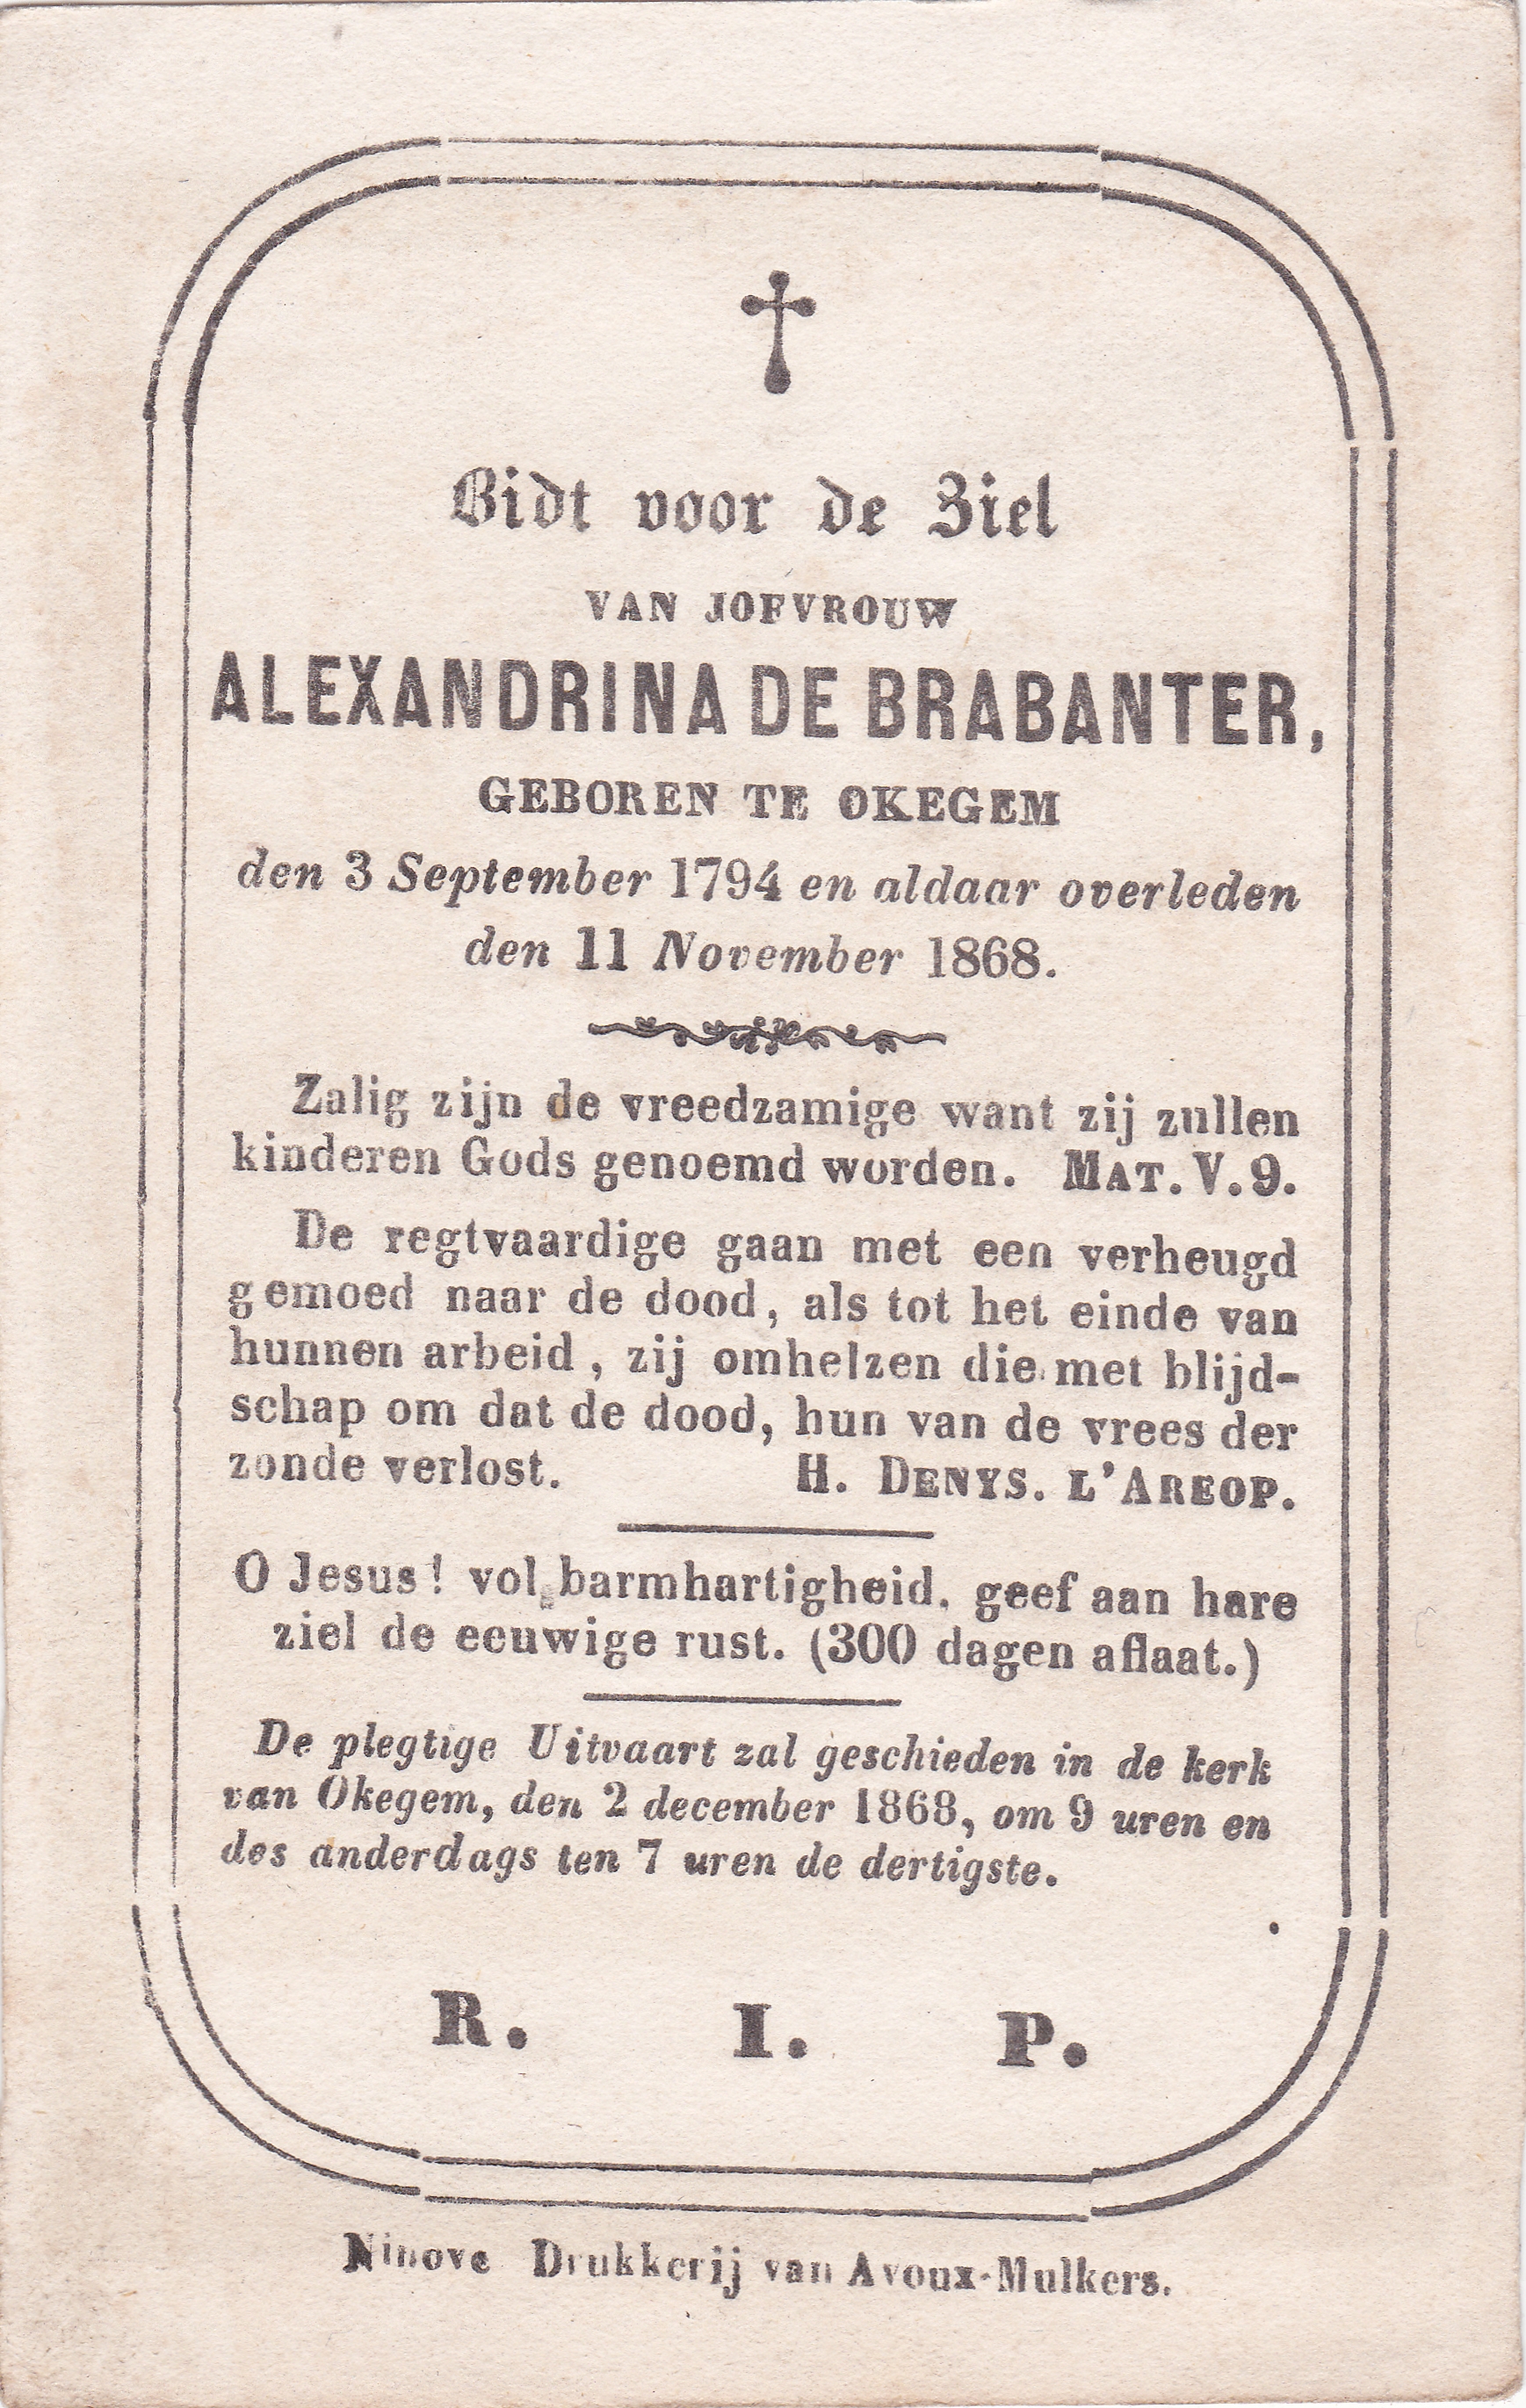 De Brabanter Alexandrina